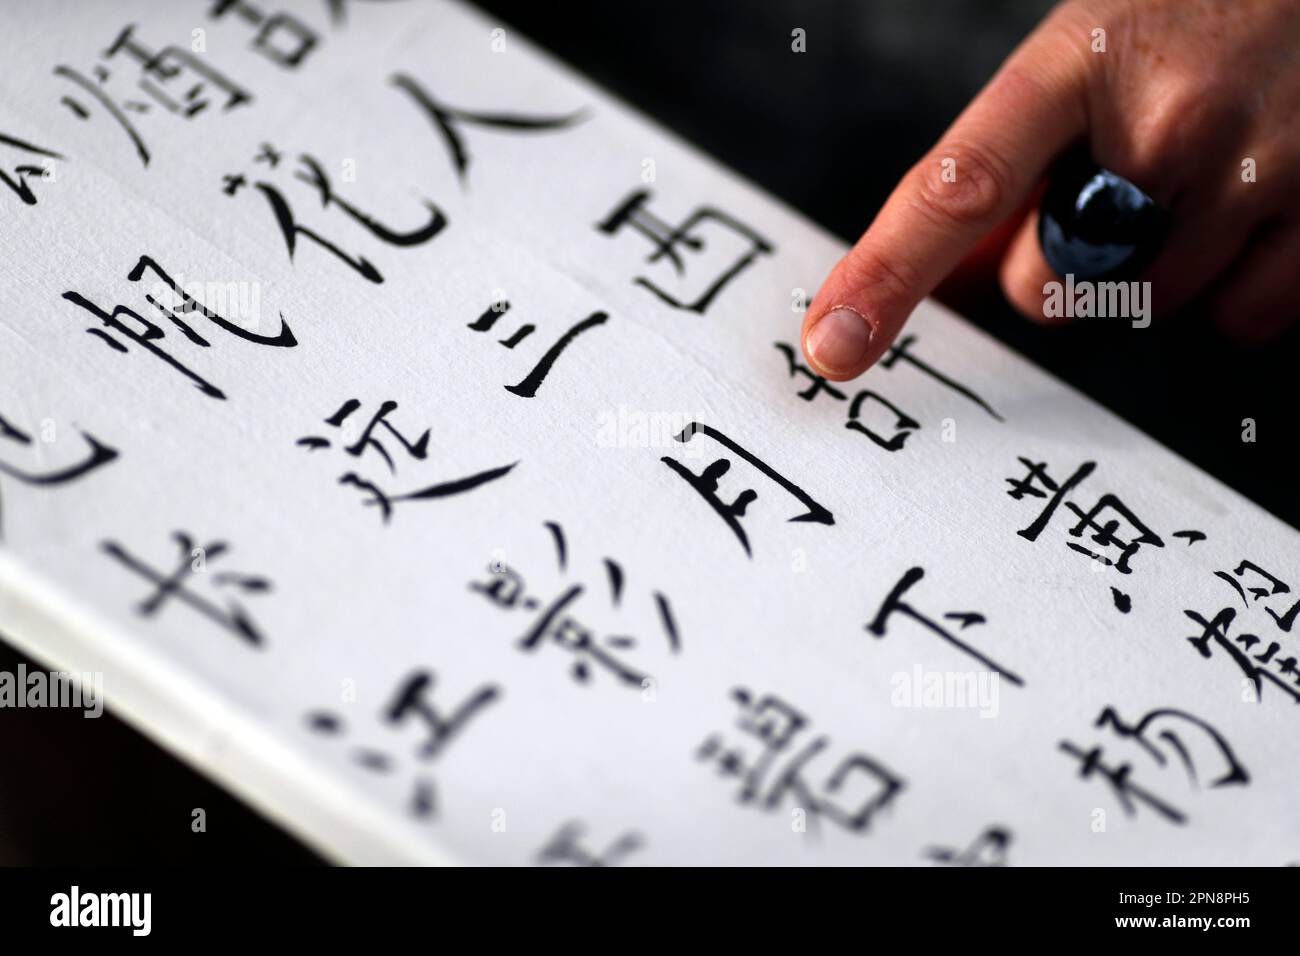 Femme montrant son travail avec des caractères chinois. Calligraphie chinoise. France. Banque D'Images